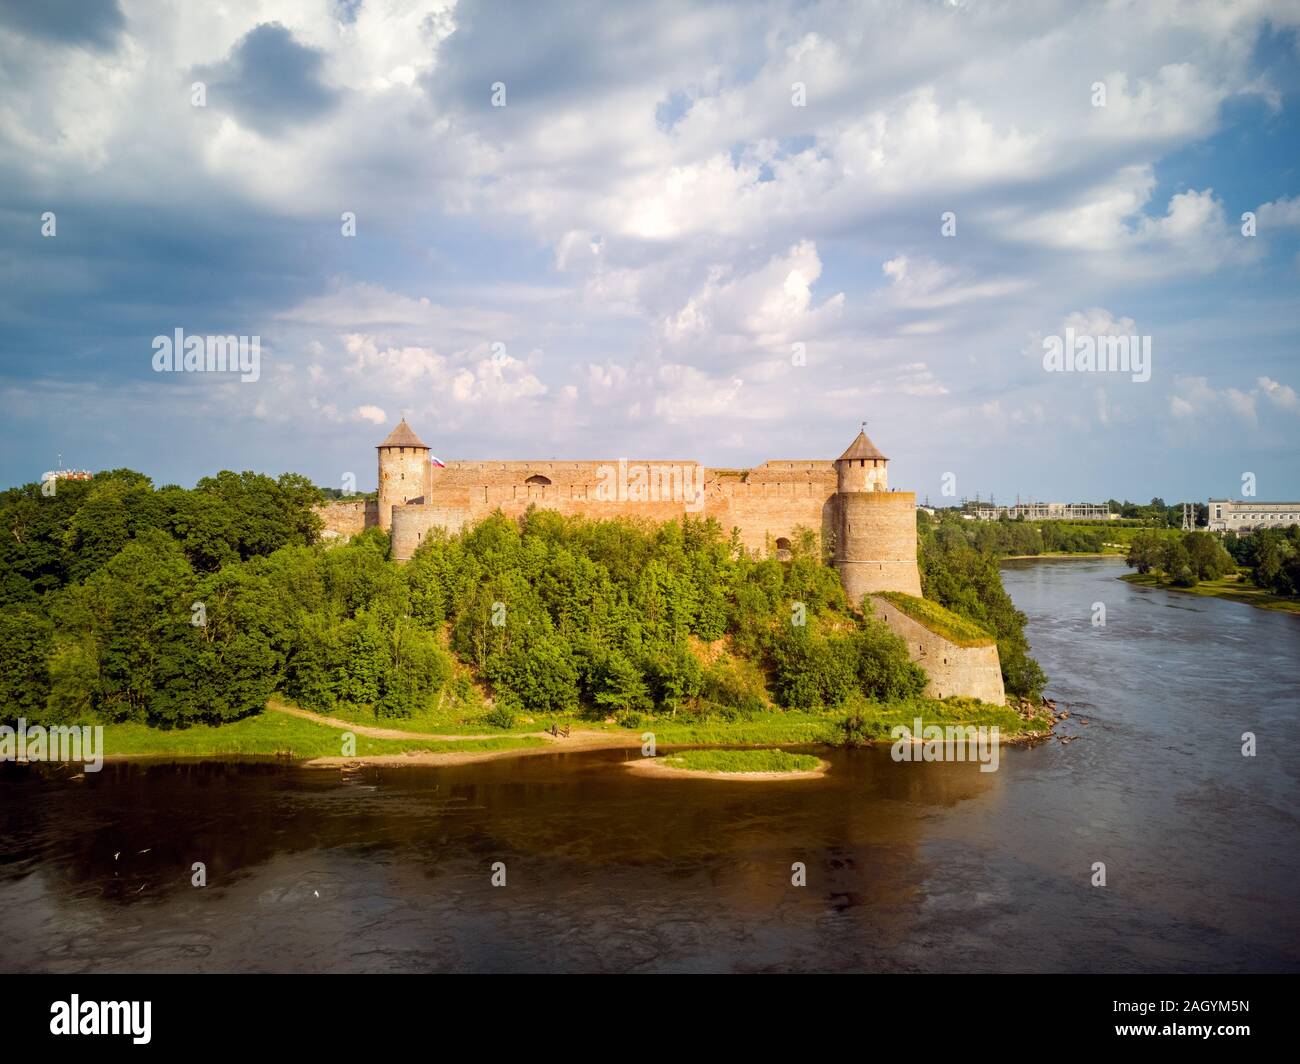 L'incroyable vue d'été de l'ancienne forteresse Ivangorod, en Russie, sur la rive de la Narva à partir du château de Narva en Estonie. Copy space Banque D'Images